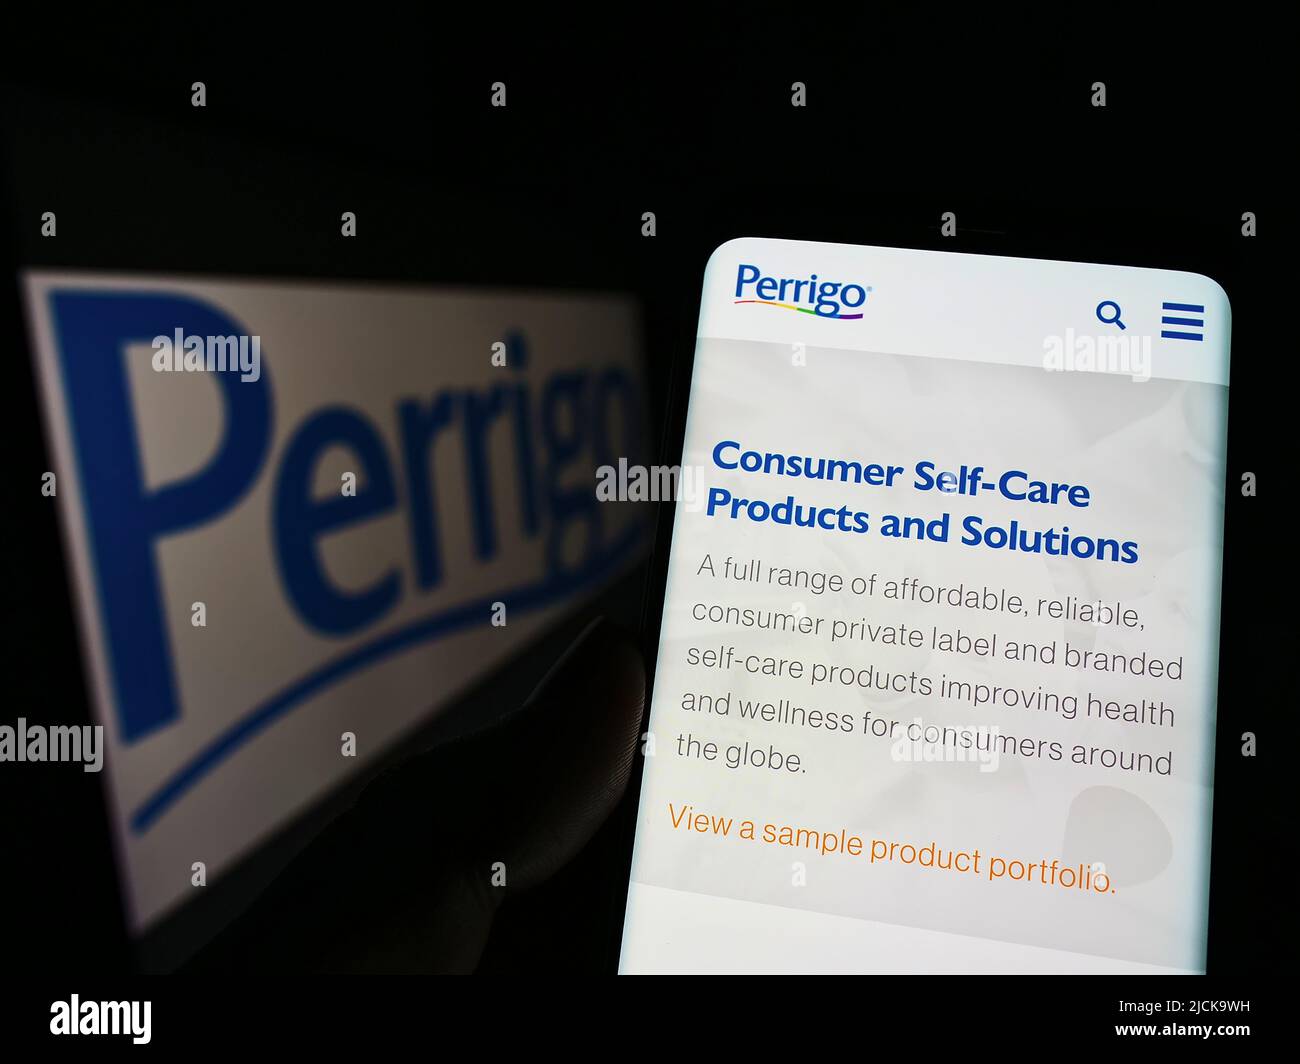 Persona che tiene il cellulare con pagina web del produttore farmaceutico Perrigo Company plc su schermo con logo. Concentrarsi sul centro del display del telefono. Foto Stock